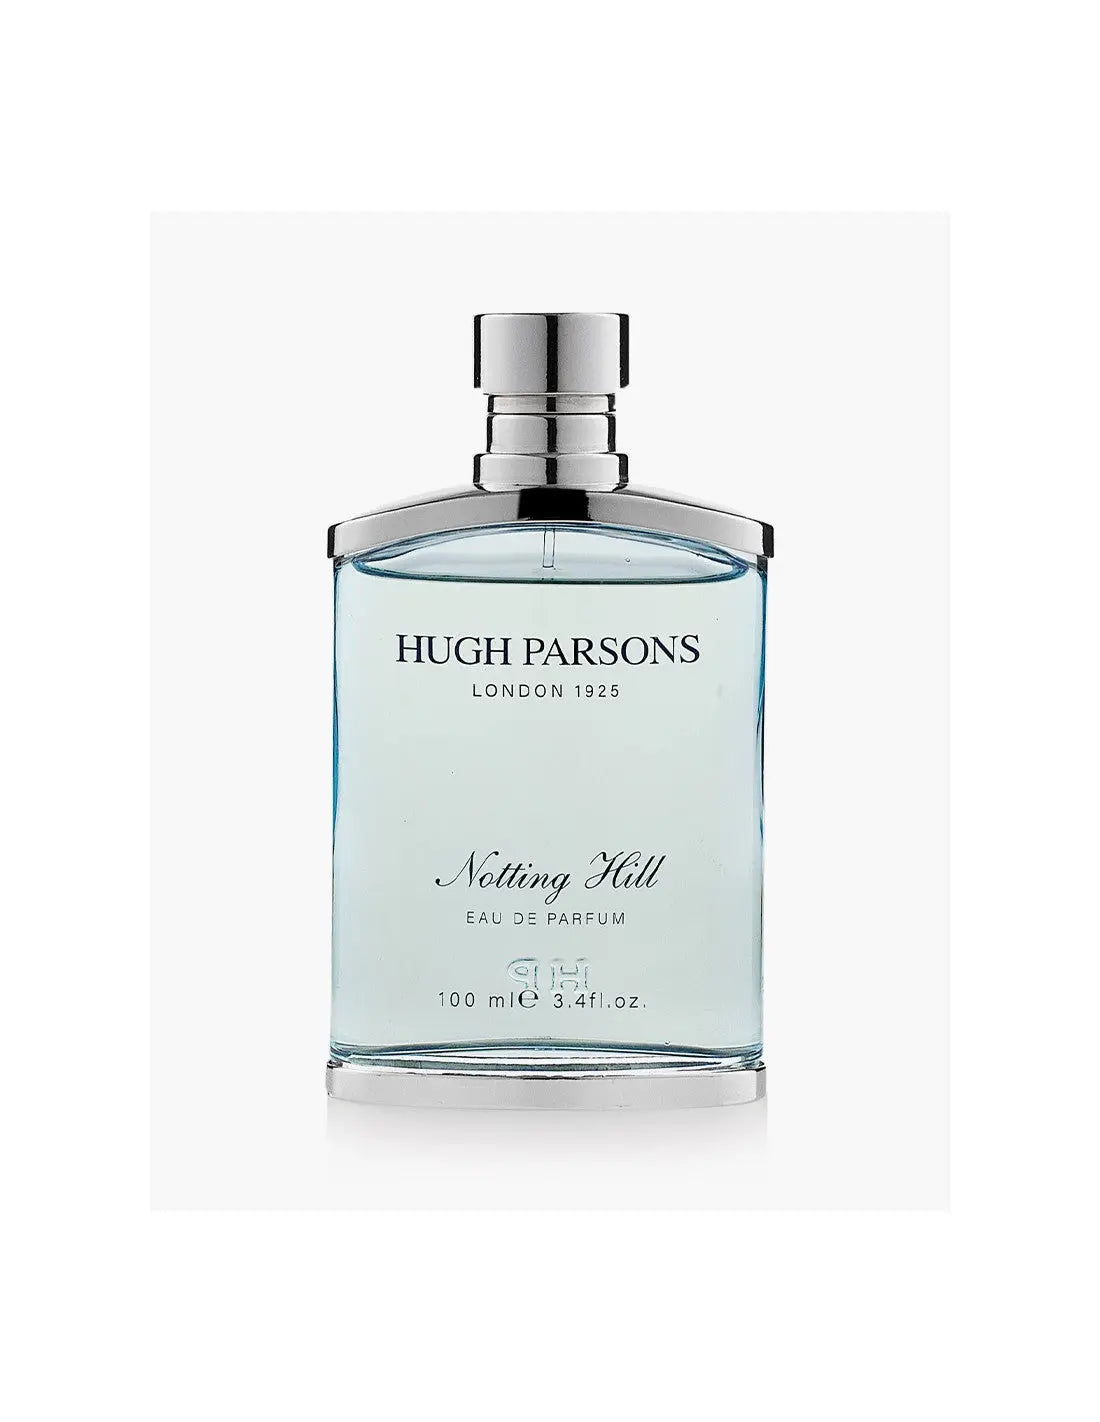 Hugh parsons Notting Hill – 100 ml